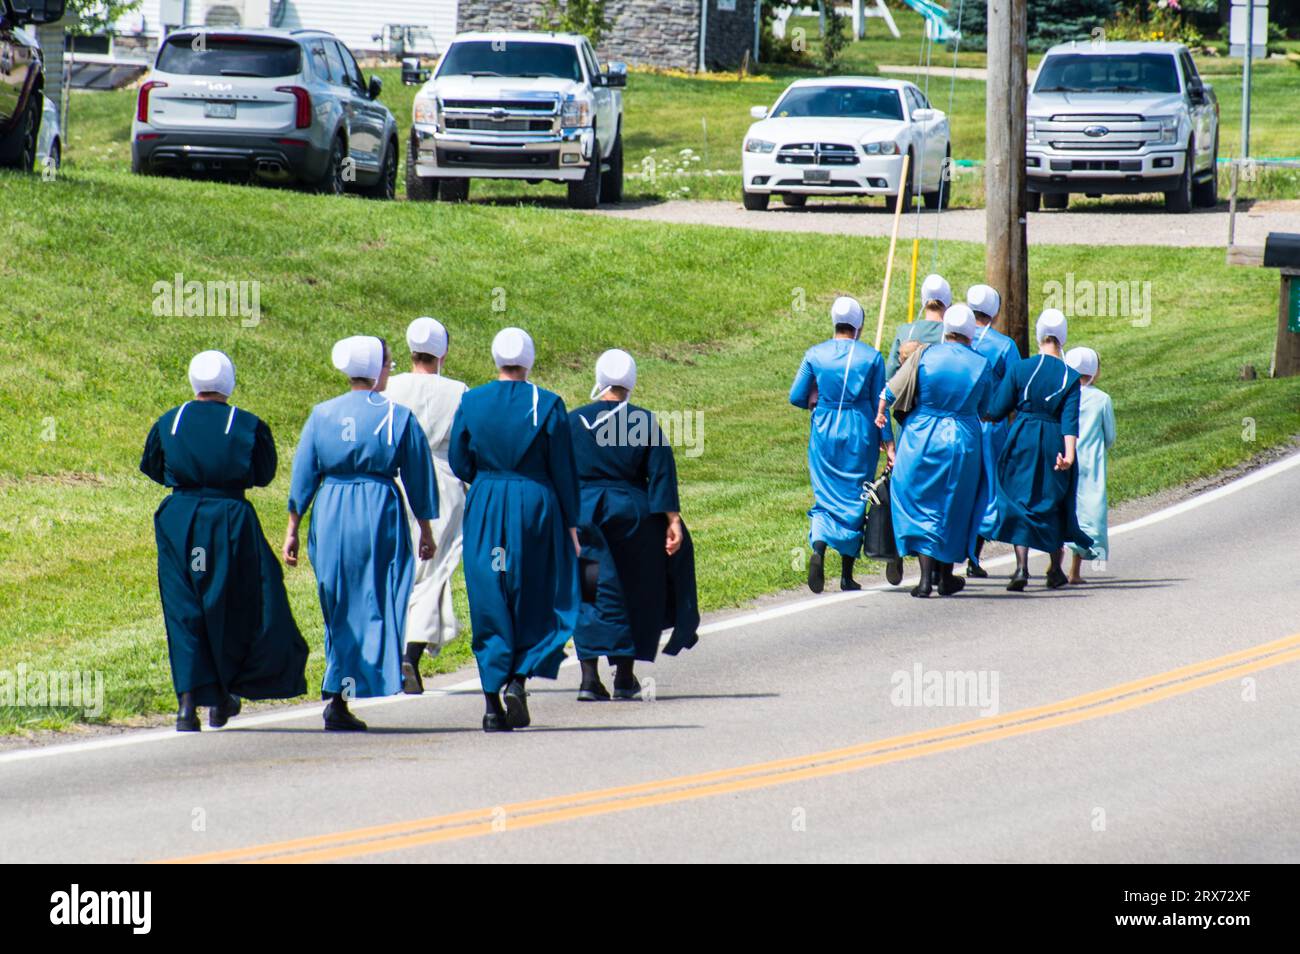 Gruppo di donne Amish in abiti semplici e colorati che camminano per strada Foto Stock